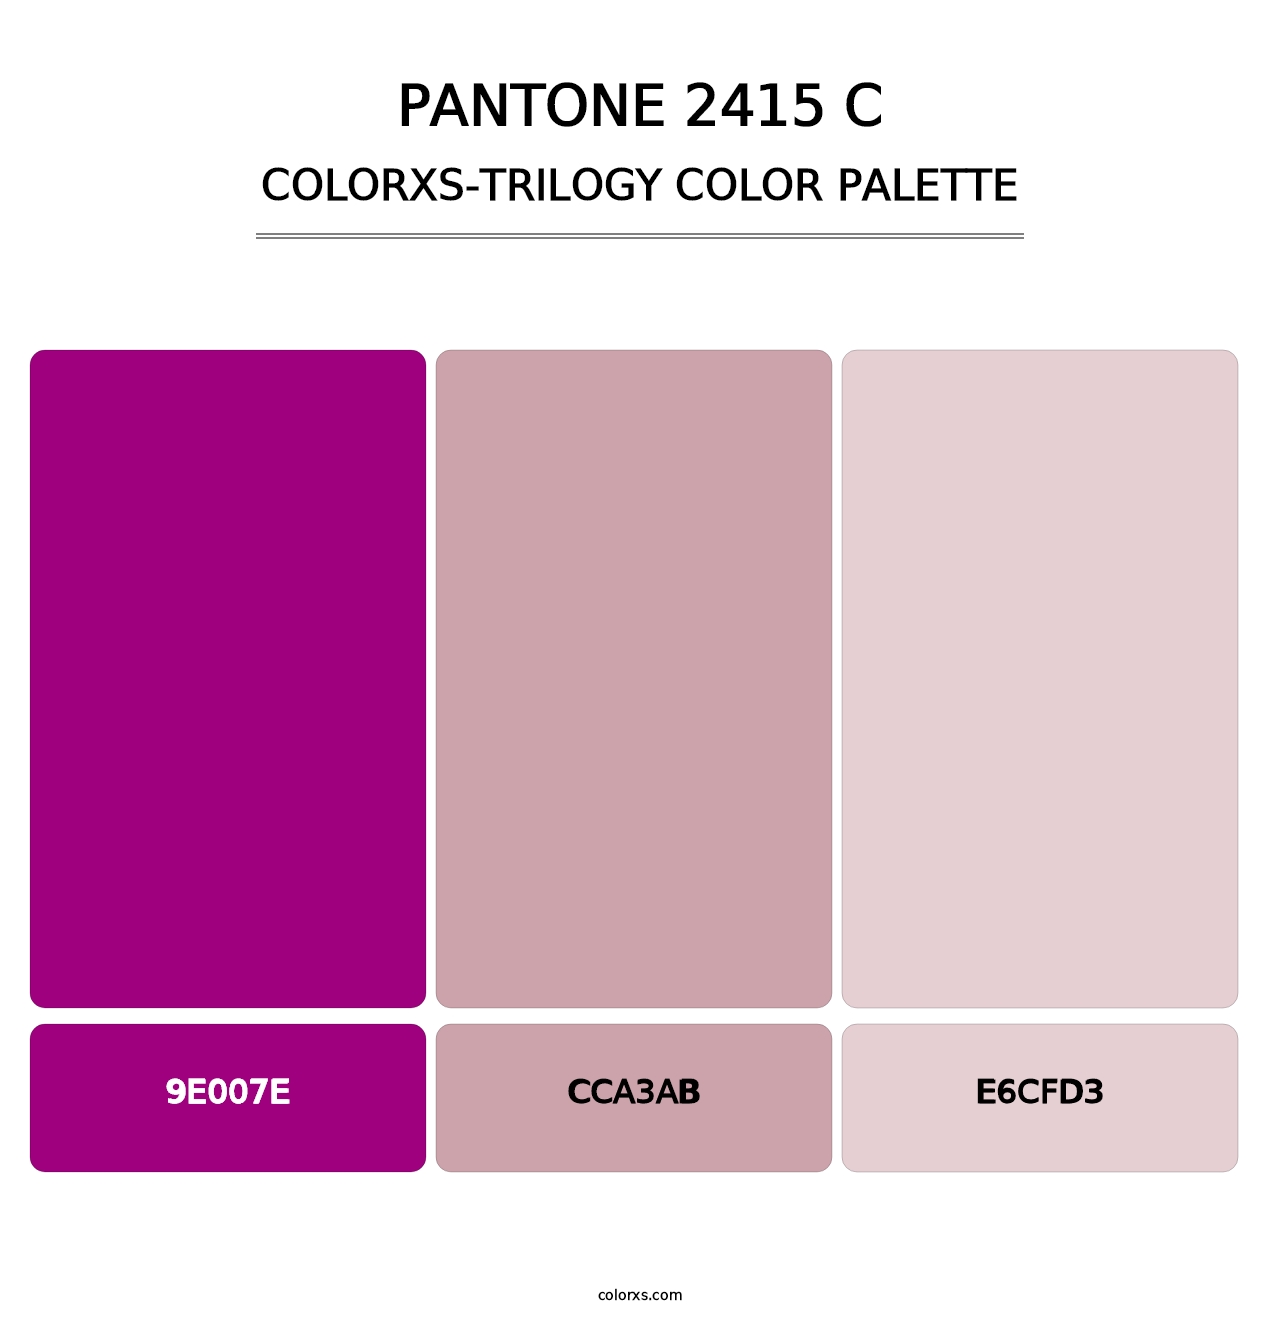 PANTONE 2415 C - Colorxs Trilogy Palette